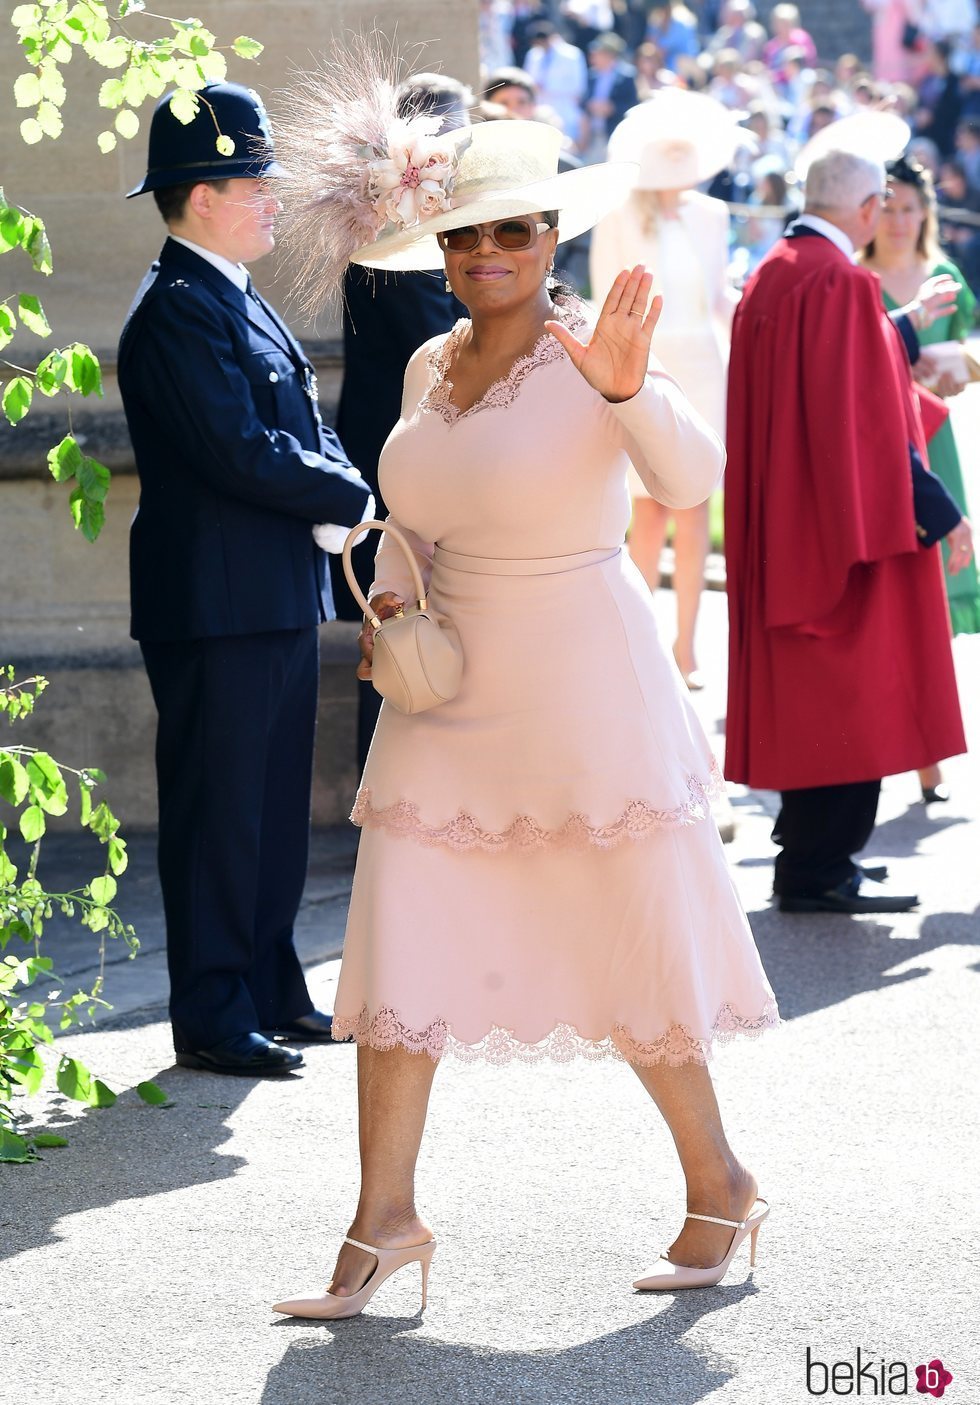 Oprah Winfrey en la boda del Príncipe Harry y Meghan Markle